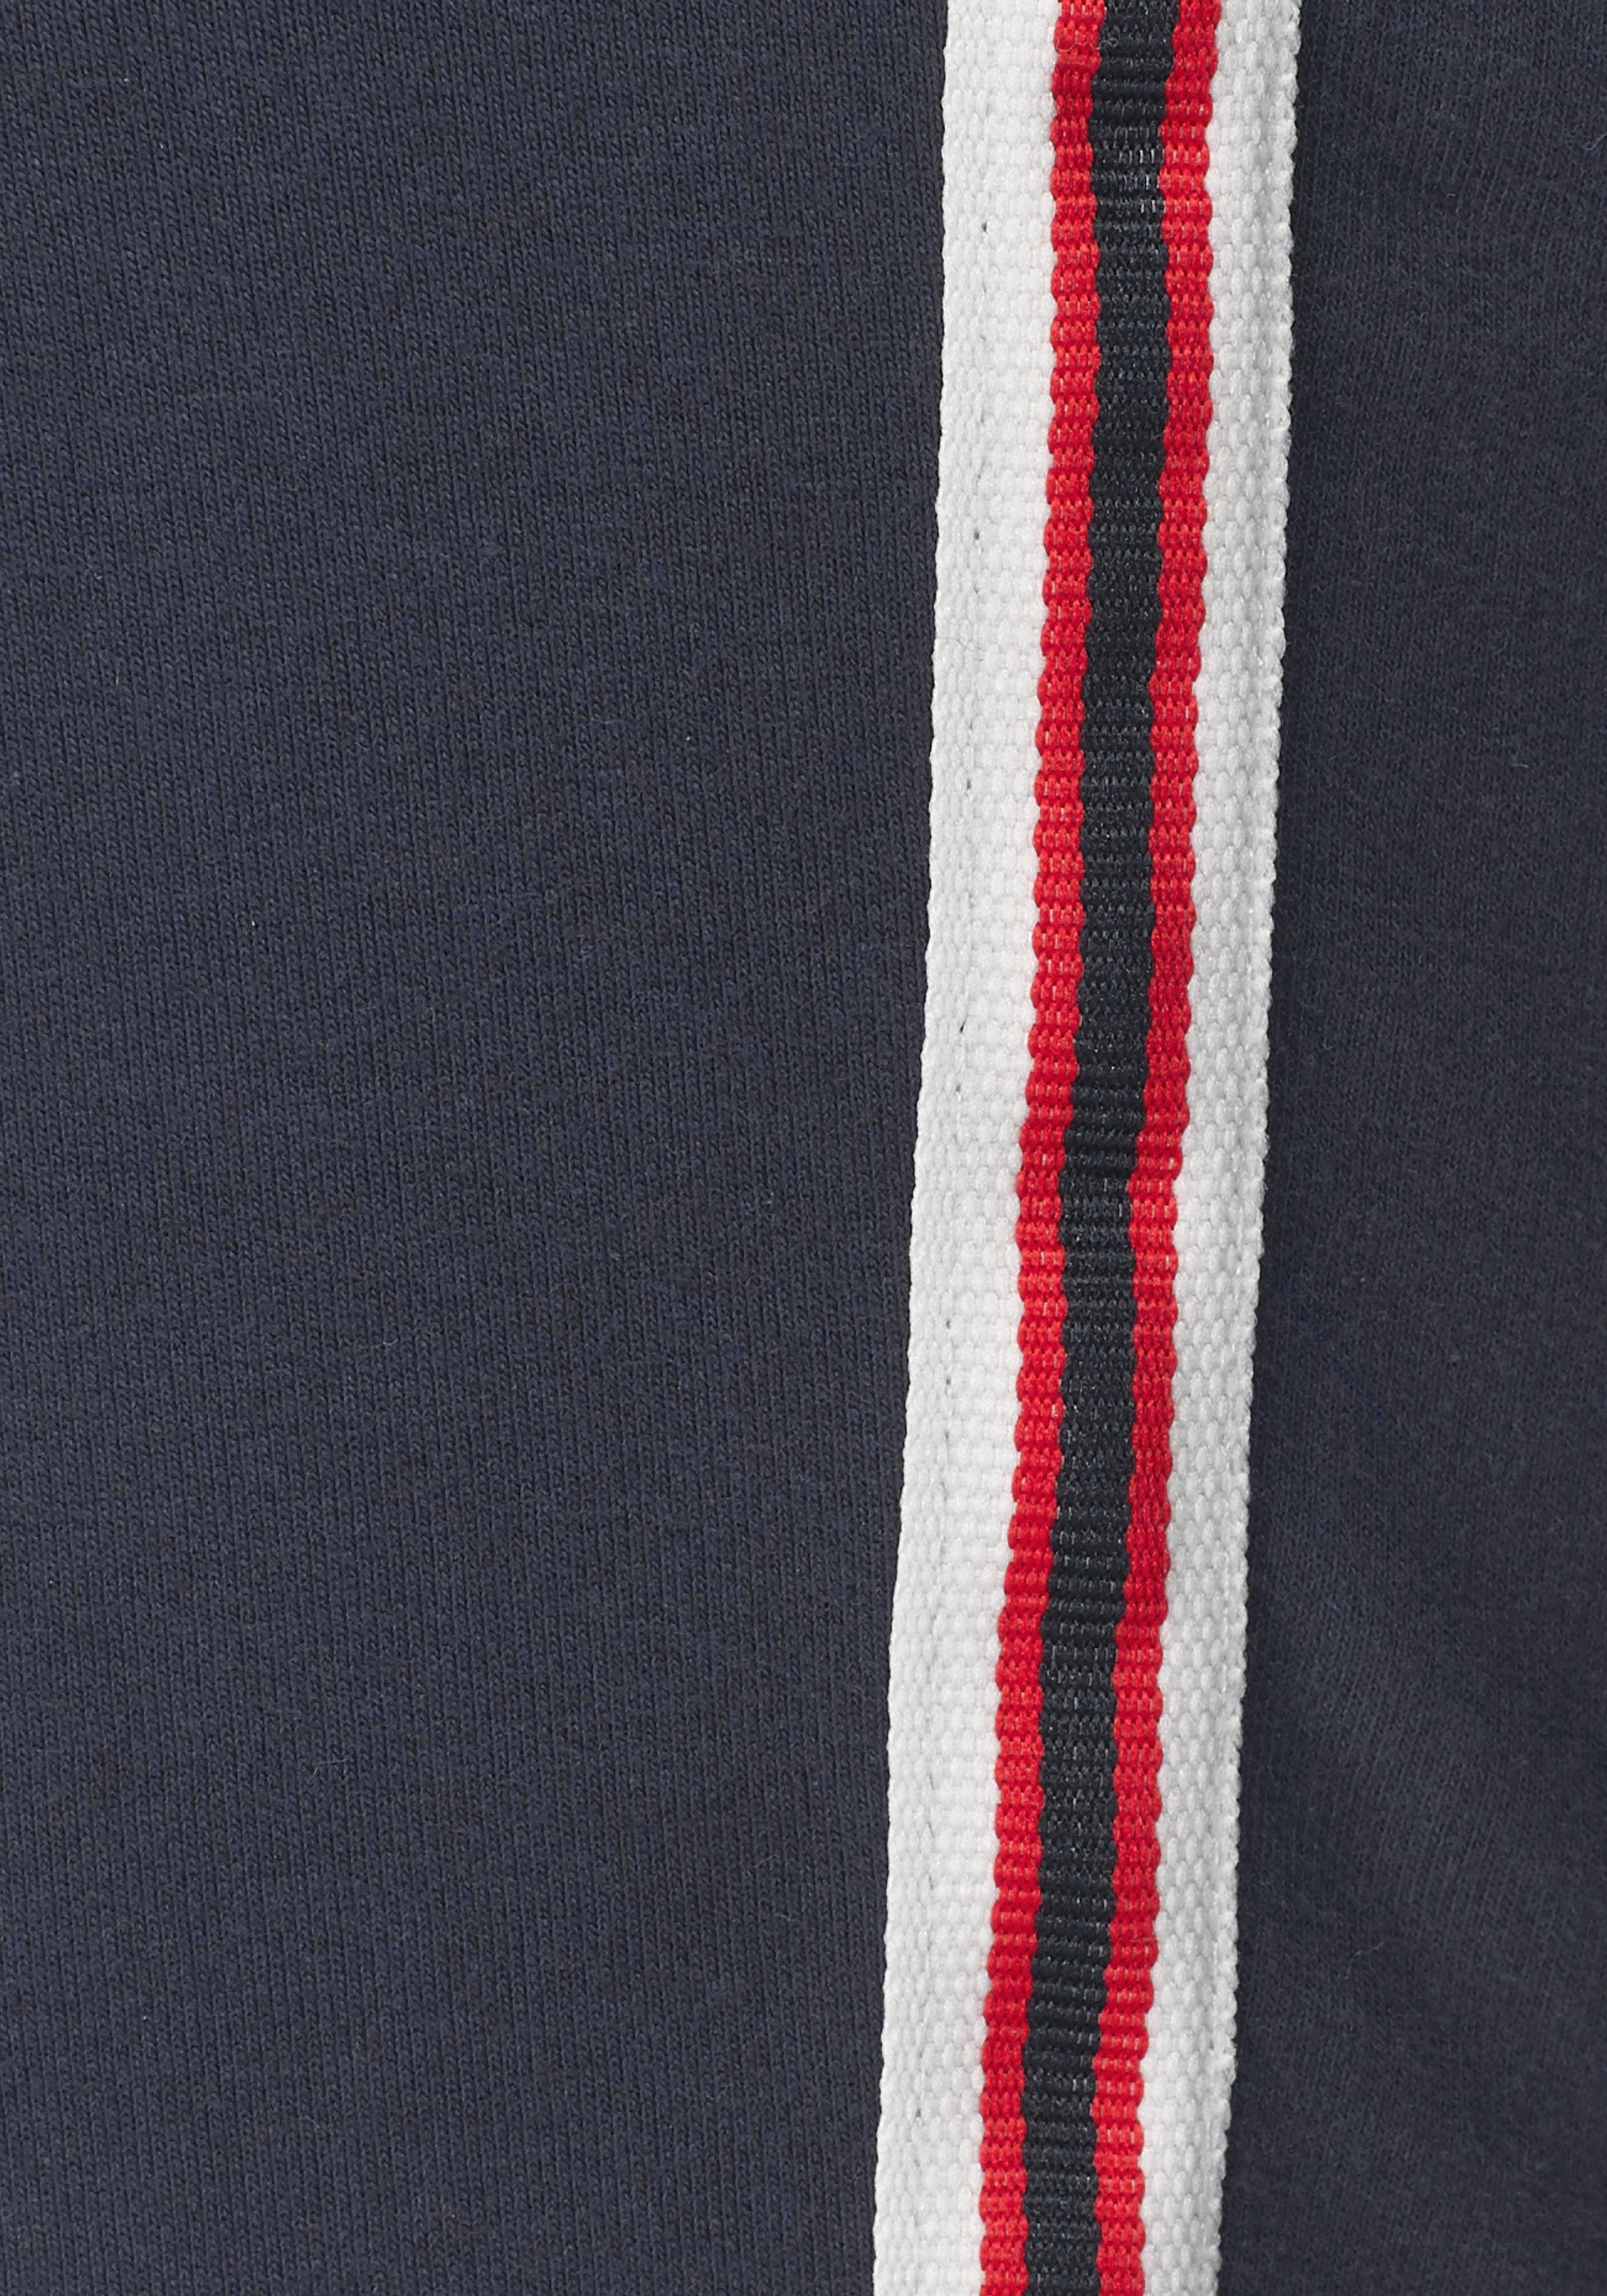 KangaROOS aufgesetztem mit Pants marine seitlichem, Jogger Galon-Streifen